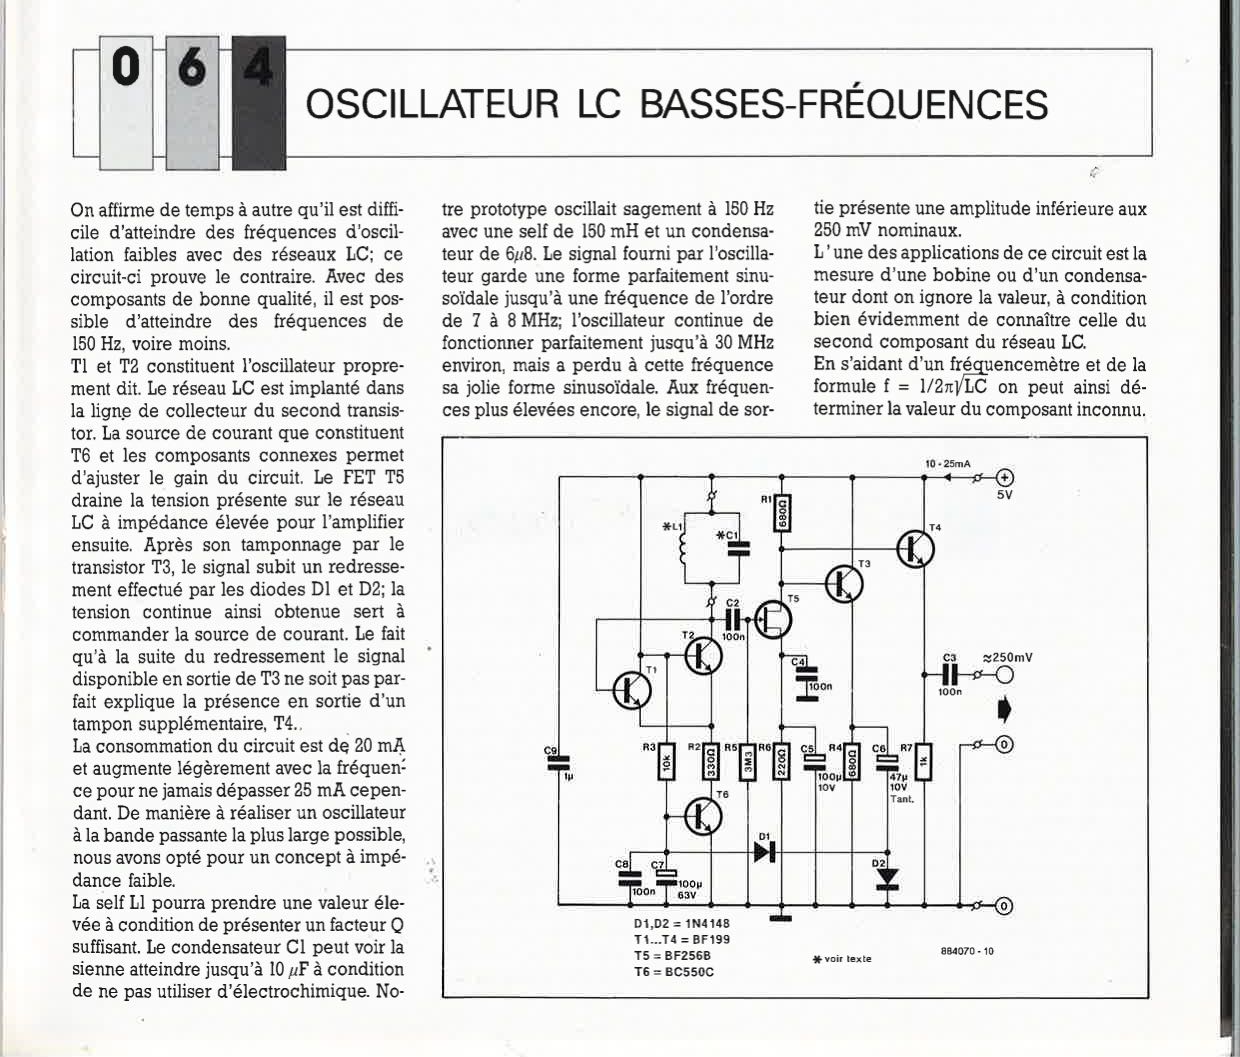 OSCILLATEUR LC BASSES-FRÉQUENCES